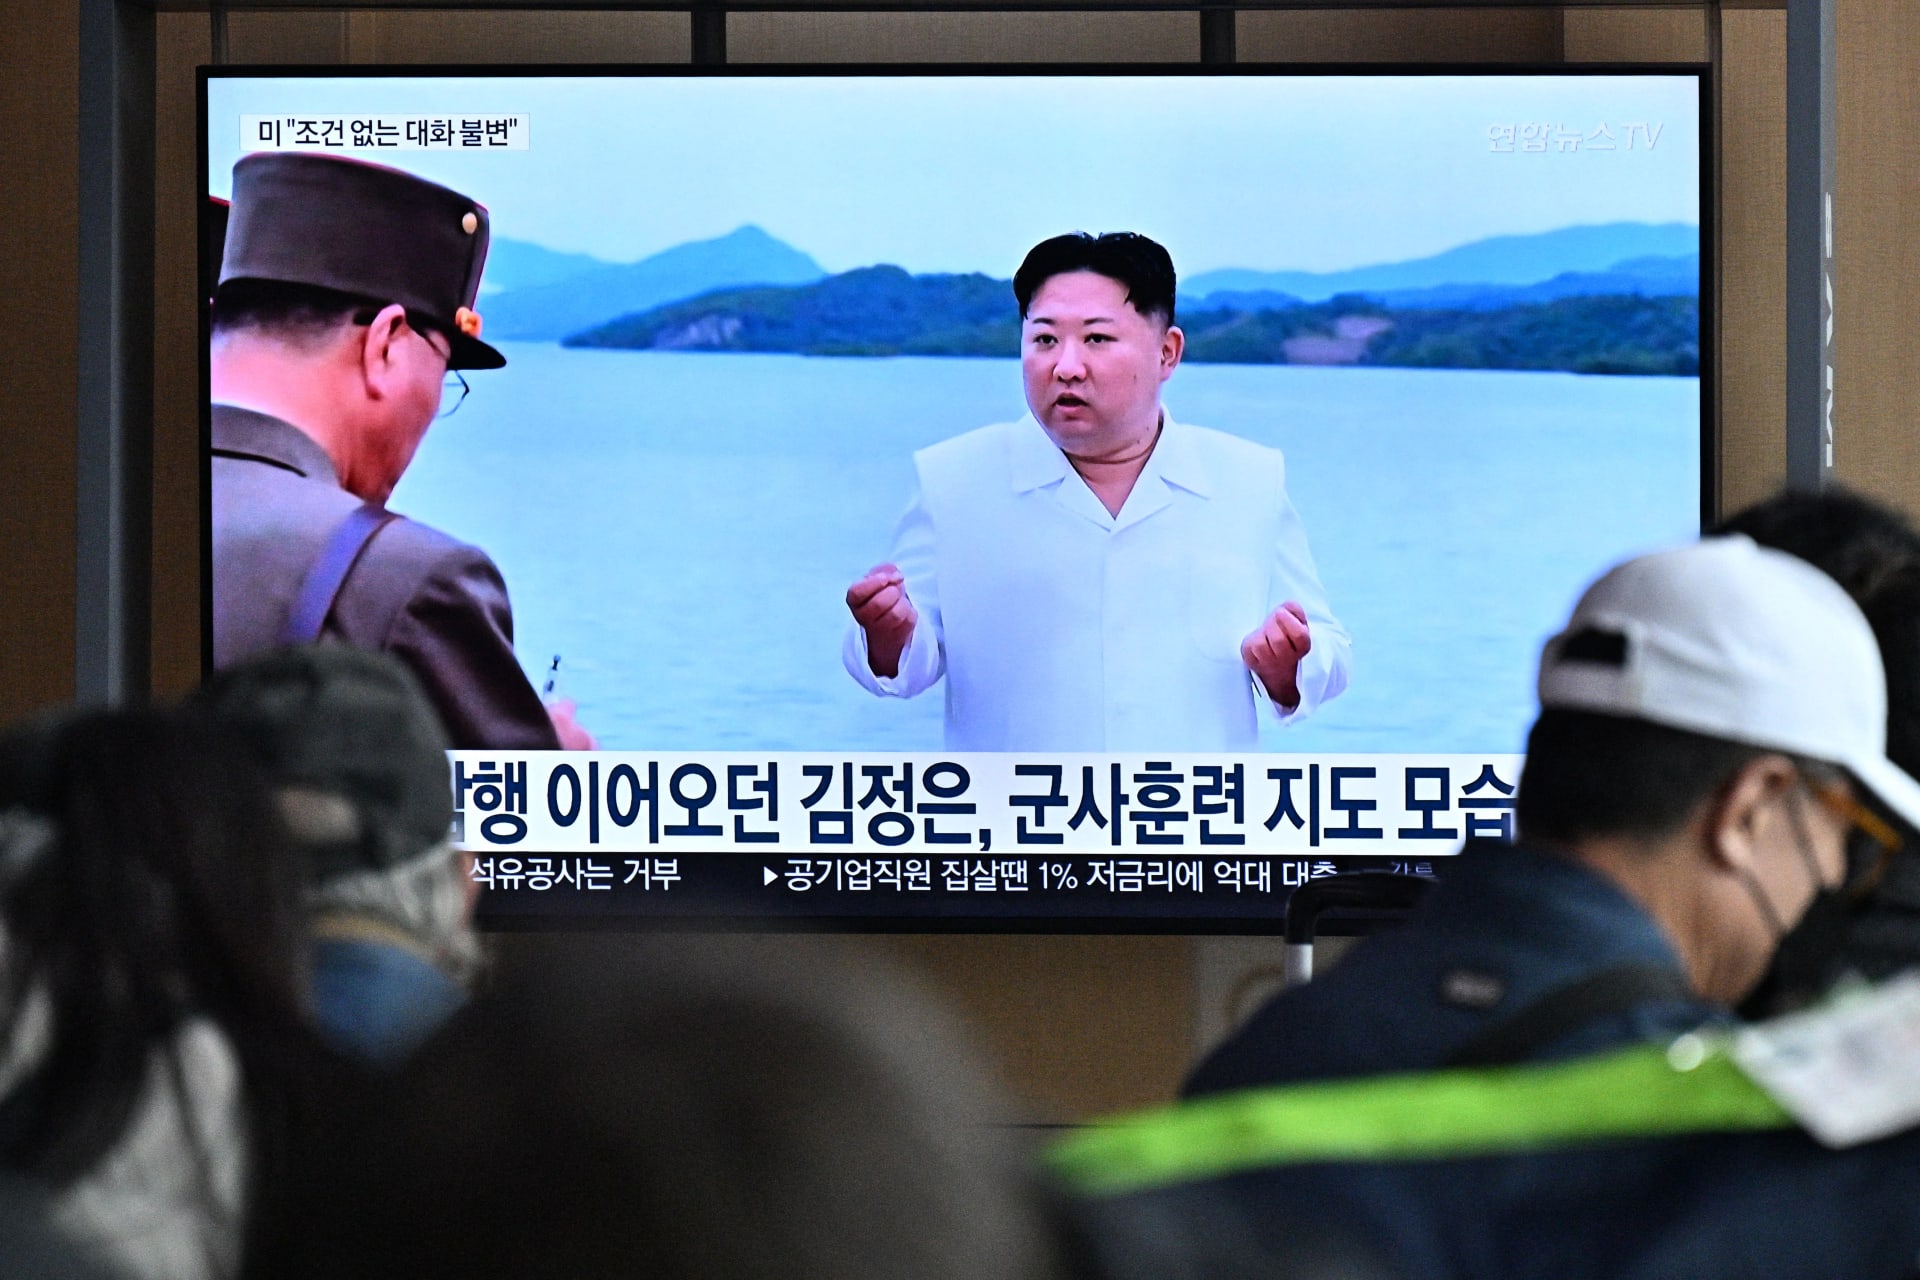 تلفزيون يعرض بثا إخباريا مع صورة للزعيم الكوري الشمالي كيم جونغ أون في محطة للسكك الحديدية بسيول